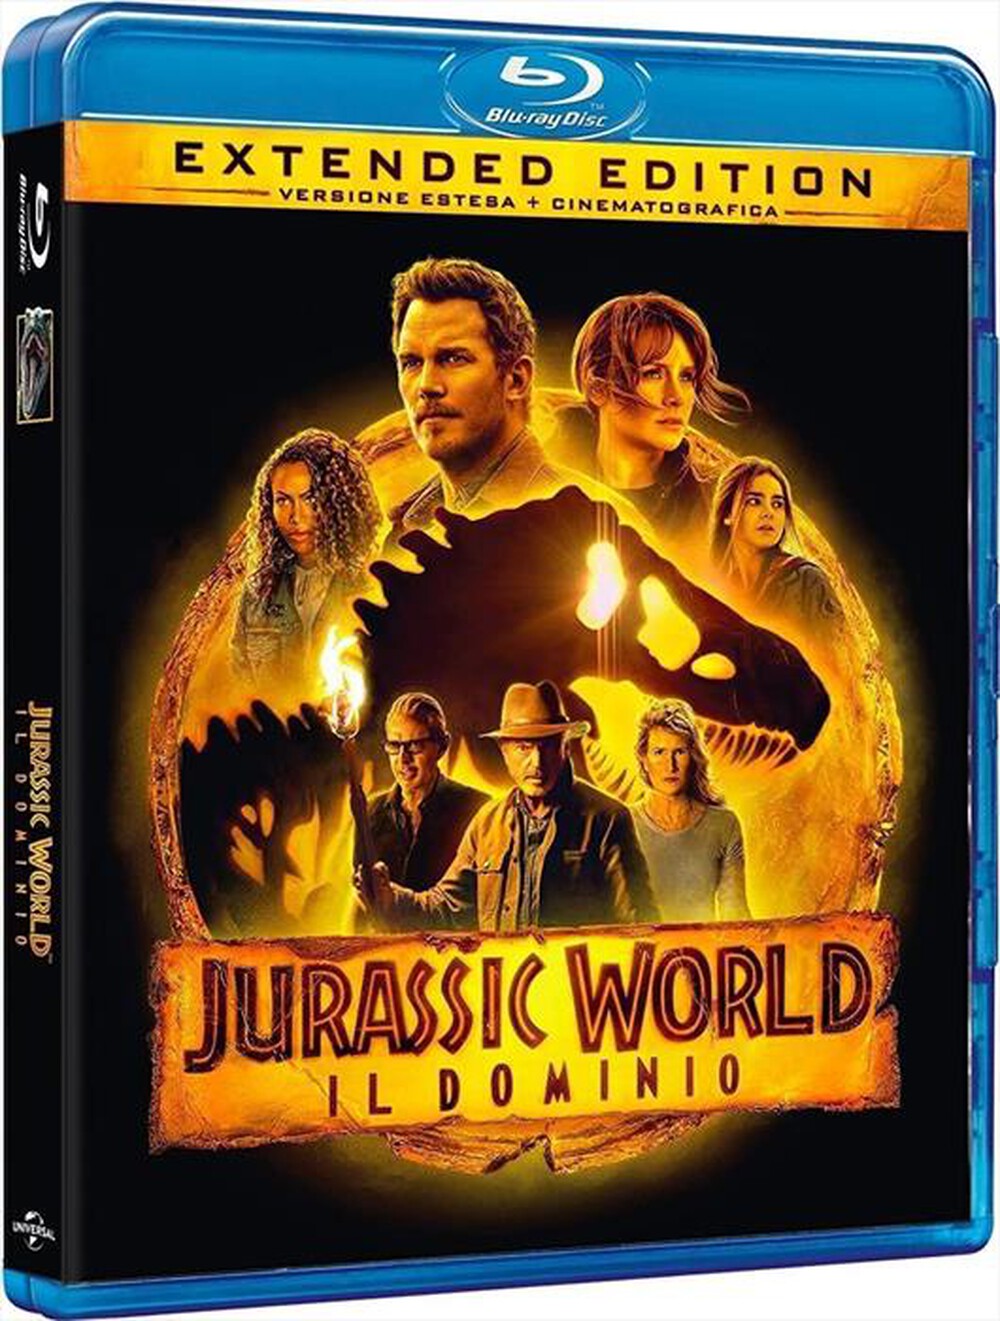 "WARNER HOME VIDEO - Jurassic World: Il Dominio"